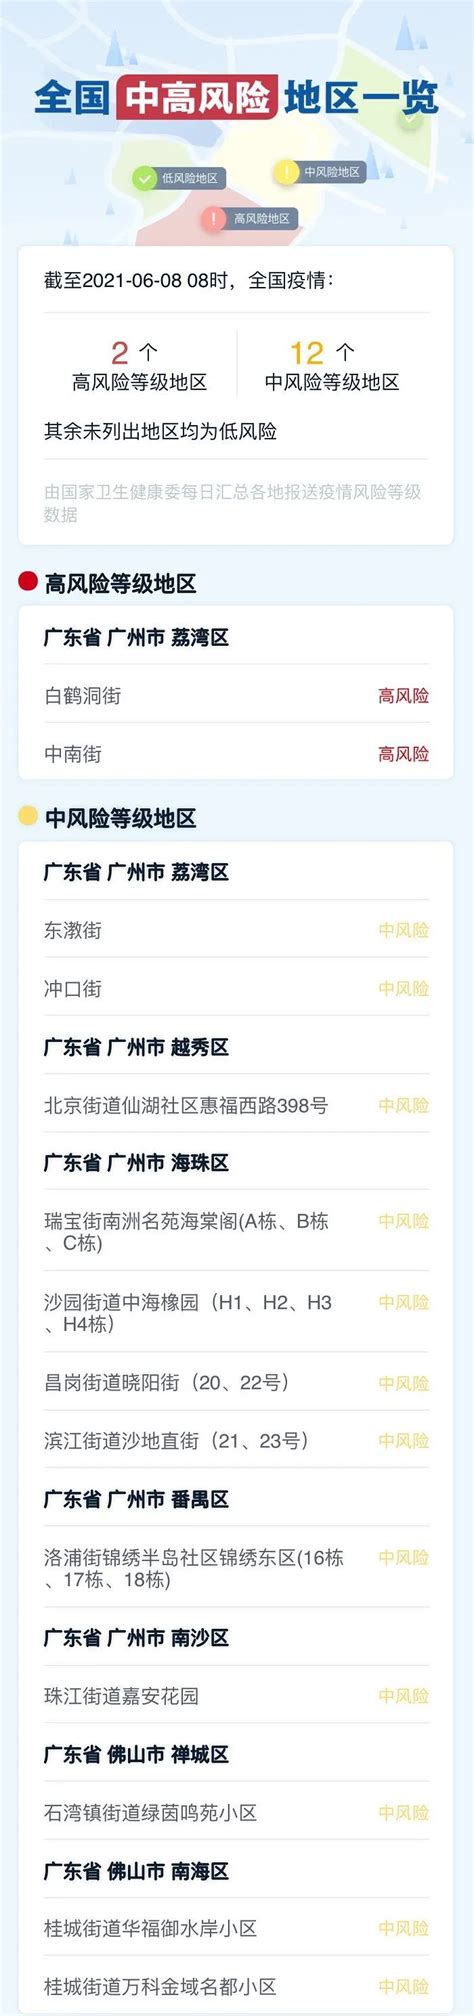 上海发布自驾离沪提示 确需离沪人员可提出申请- 上海本地宝